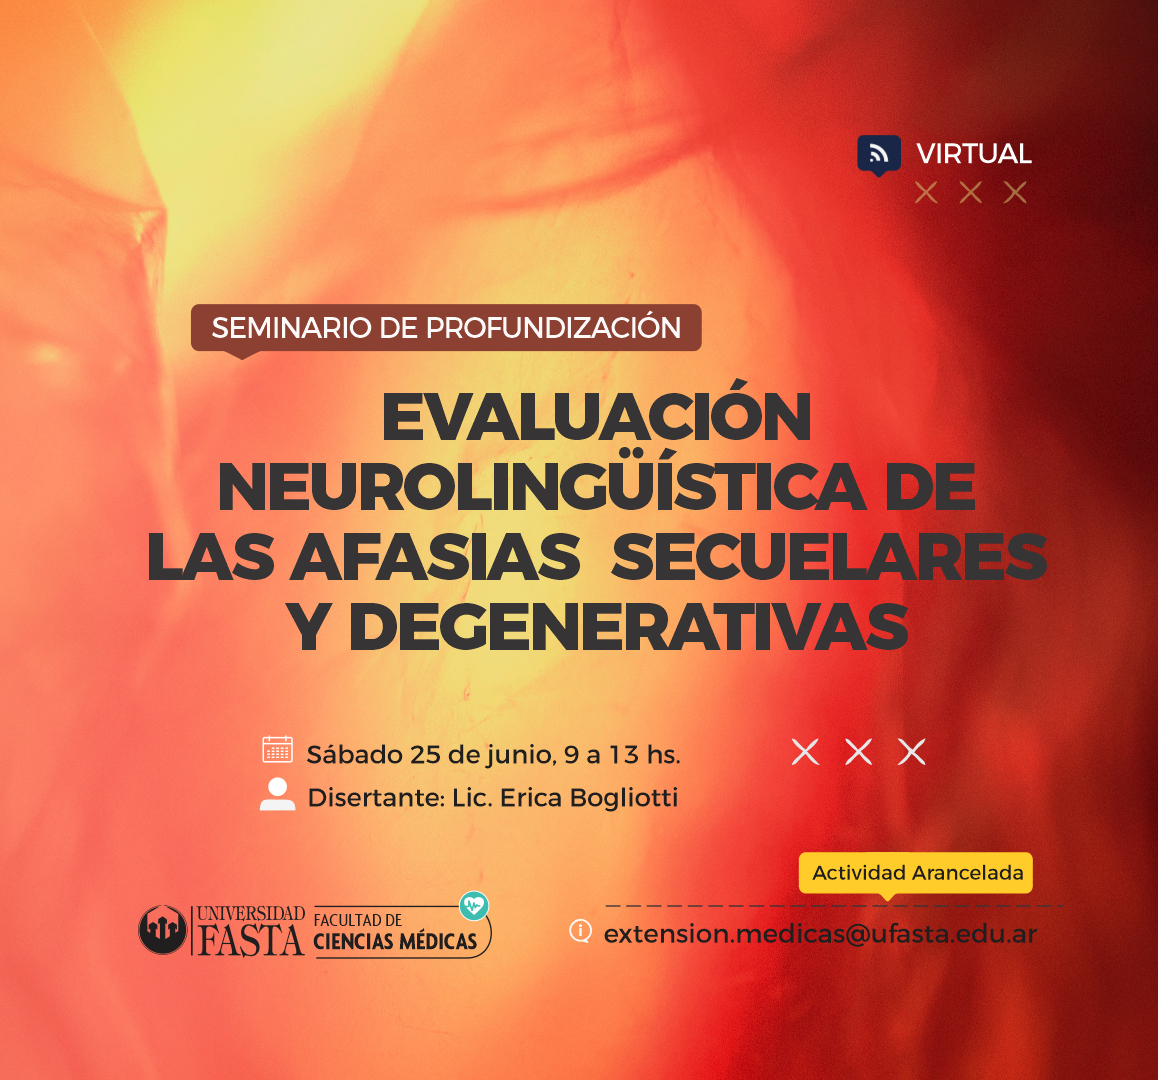 Seminario de Profundización VIRTUAL "Evaluación Neurolingüística de las Afasias Secuelares y Degenerativas"